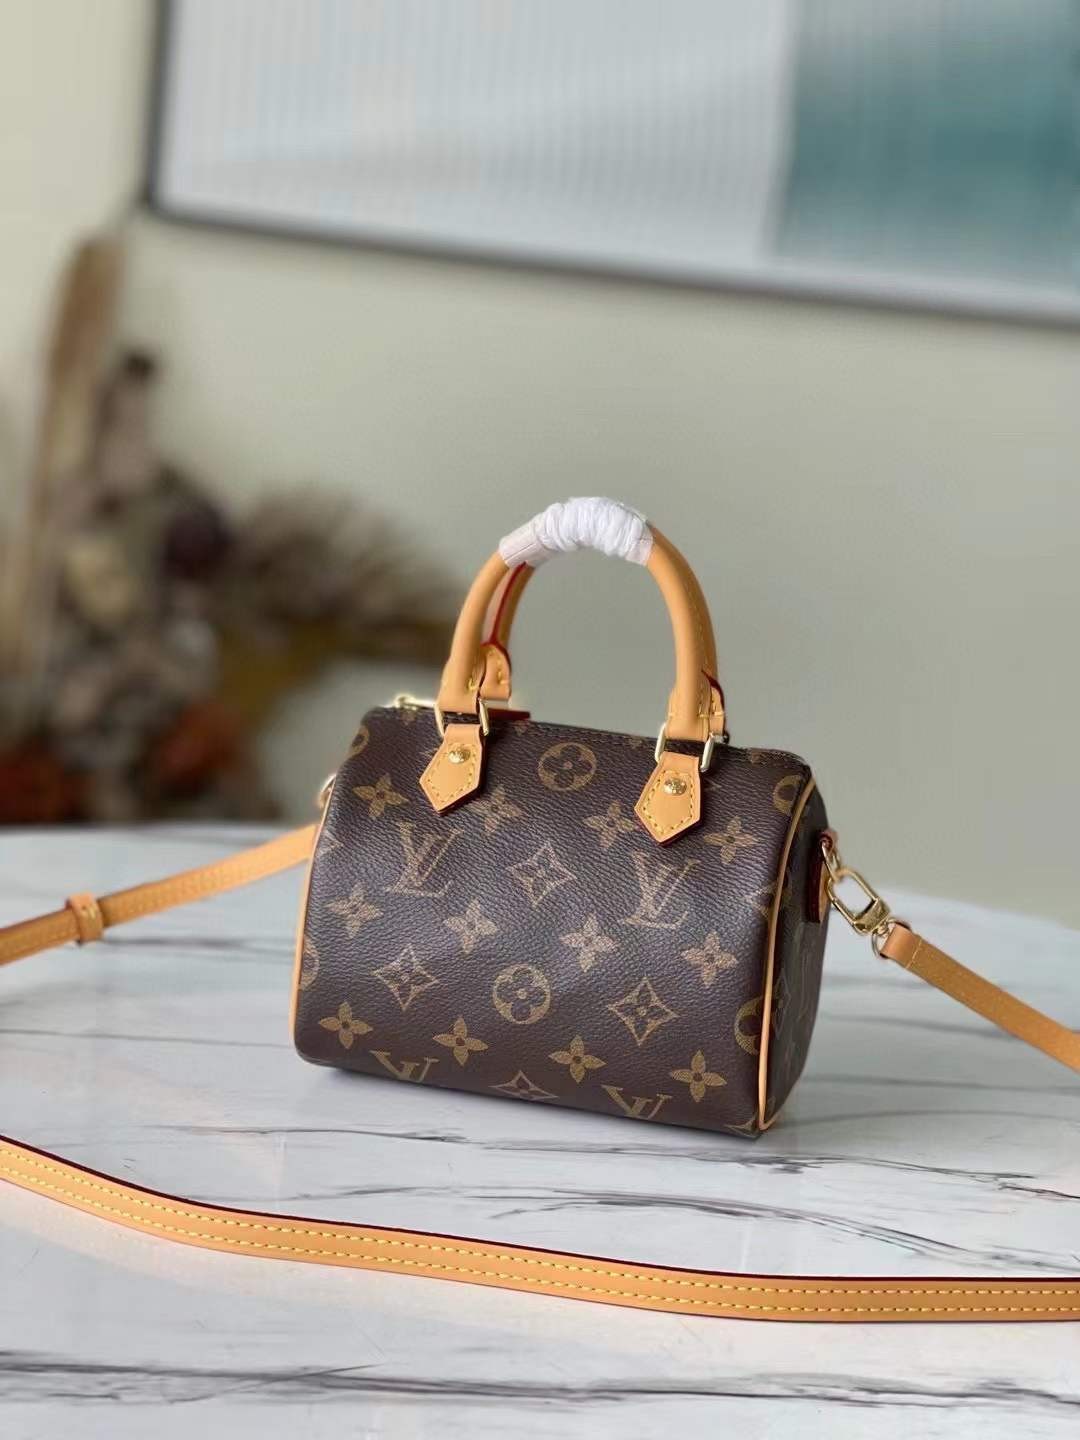 Louis Vuitton M81085 NANO SPEEDY საუკეთესო ხარისხის რეპლიკა ჩანთა (2022 განახლებული) - საუკეთესო ხარისხის ყალბი Louis Vuitton ჩანთა ონლაინ მაღაზია, რეპლიკა დიზაინერის ჩანთა ru